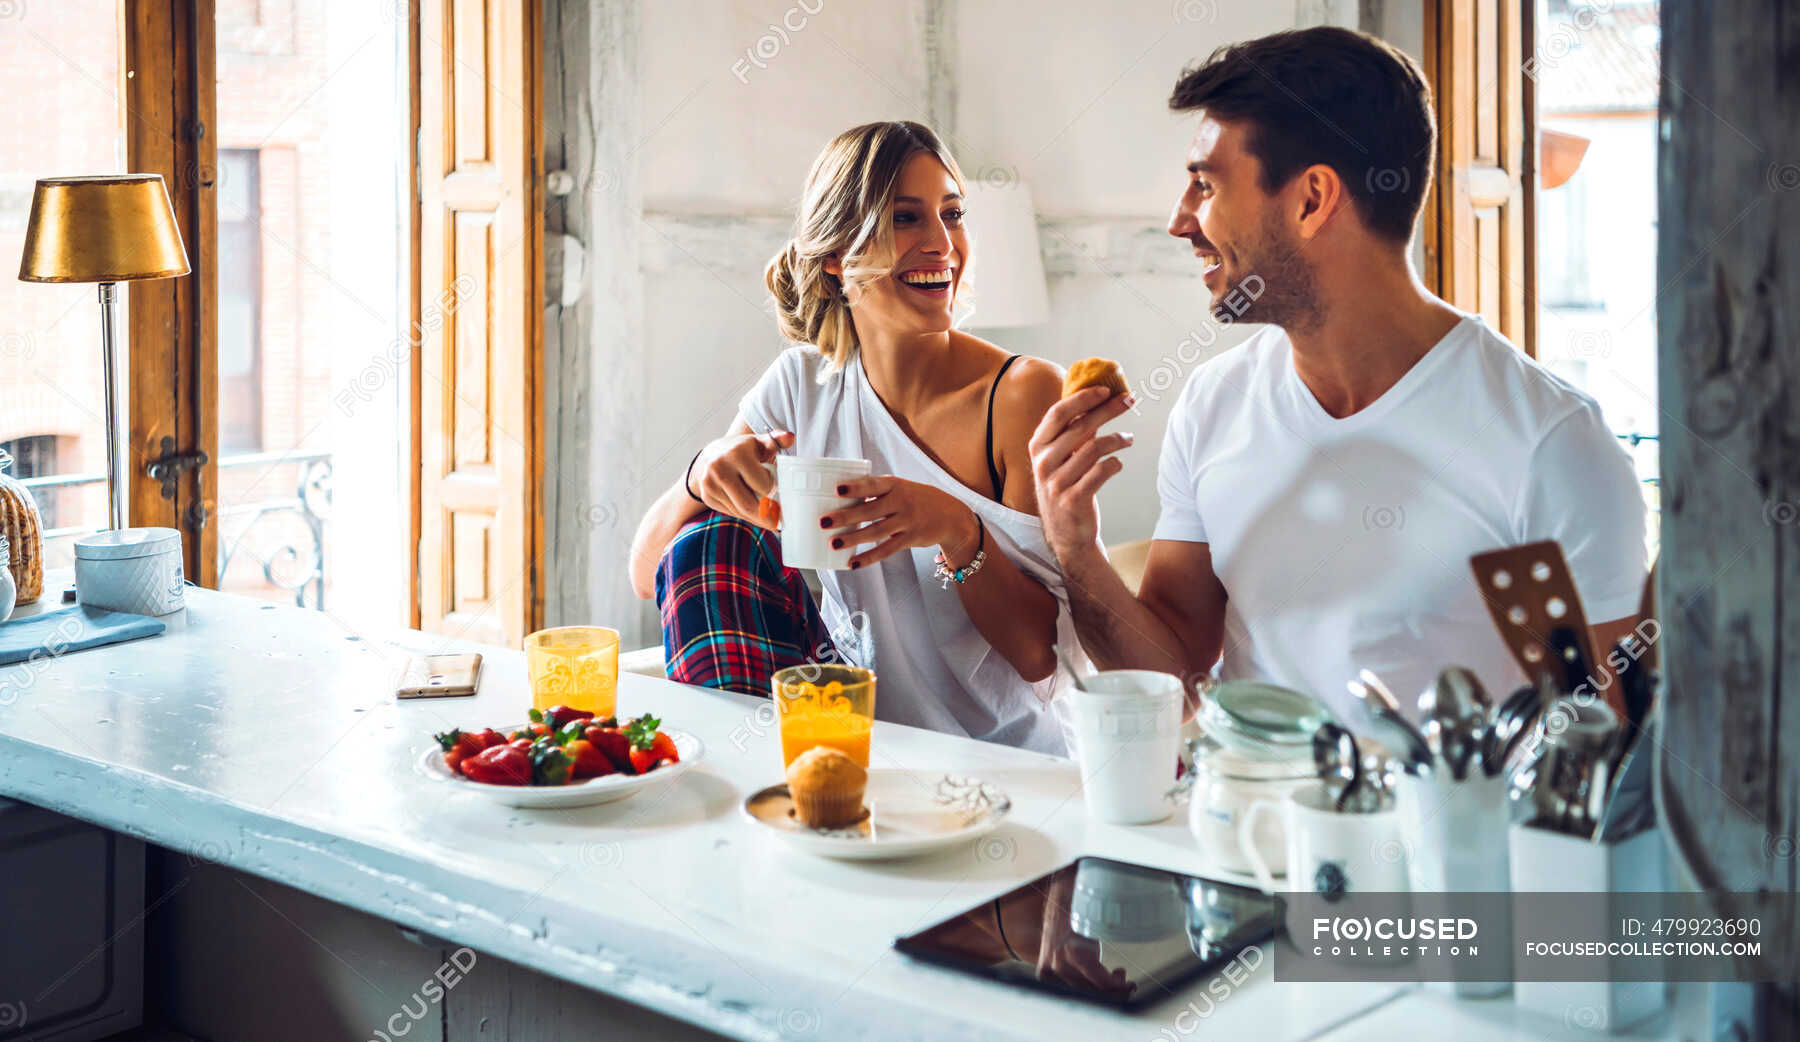 Девушку на кухонном столе. Совместный завтрак. Мужчина и женщина завтракают. Завтрак вдвоем. Фотосессия на кухне.